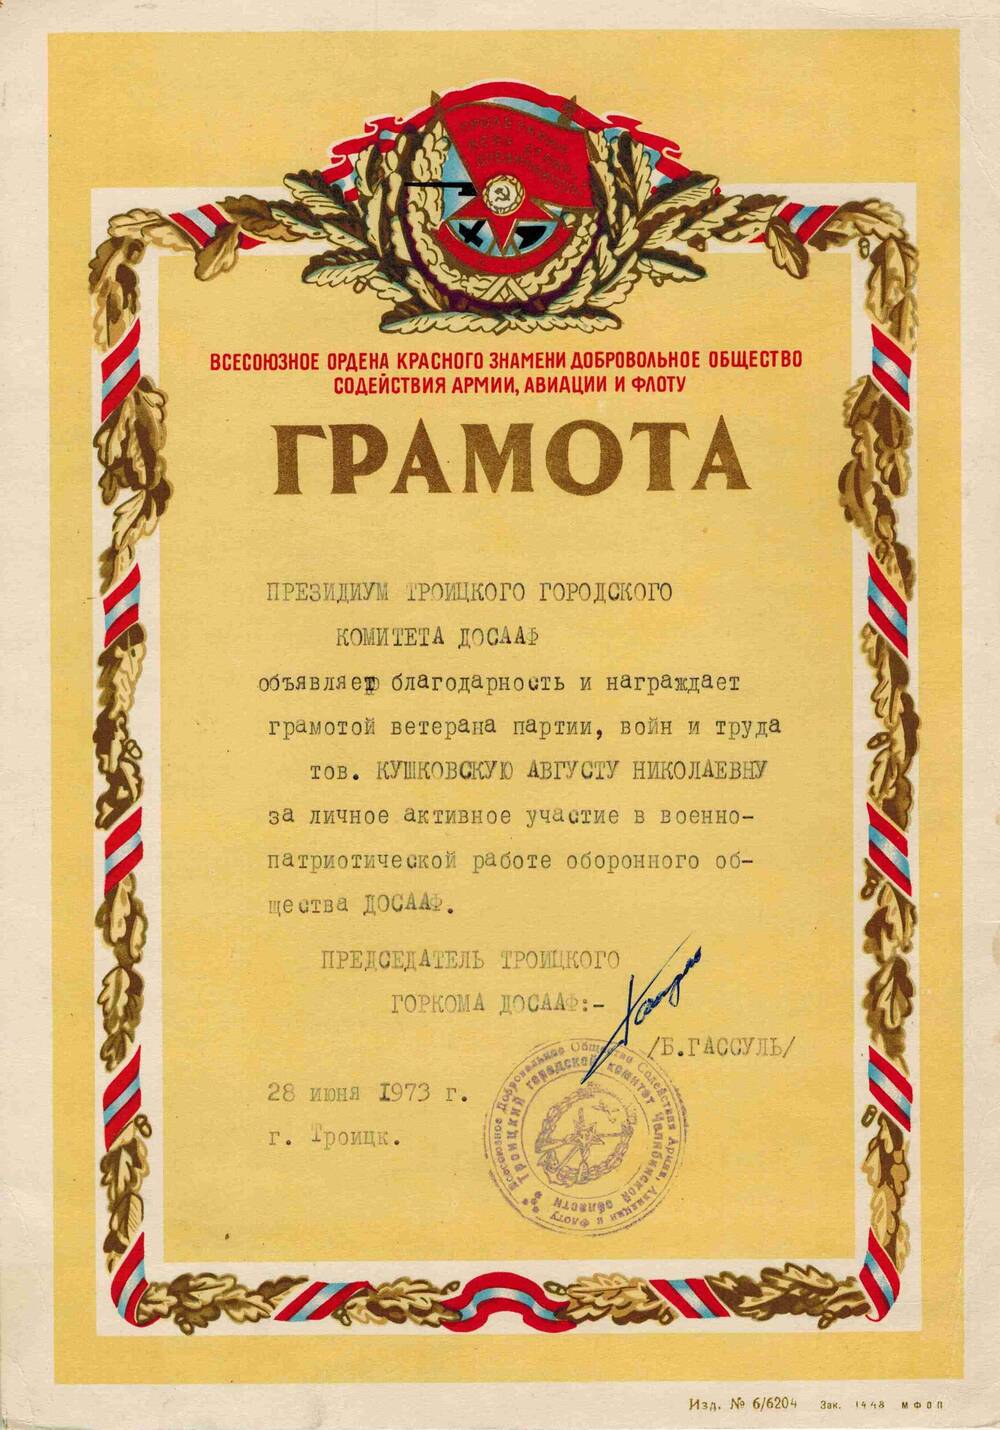 Грамота Кушковской Августы Николаевны за личное активное участие в военно-патриотической работе оборонного общества ДОСААФ.